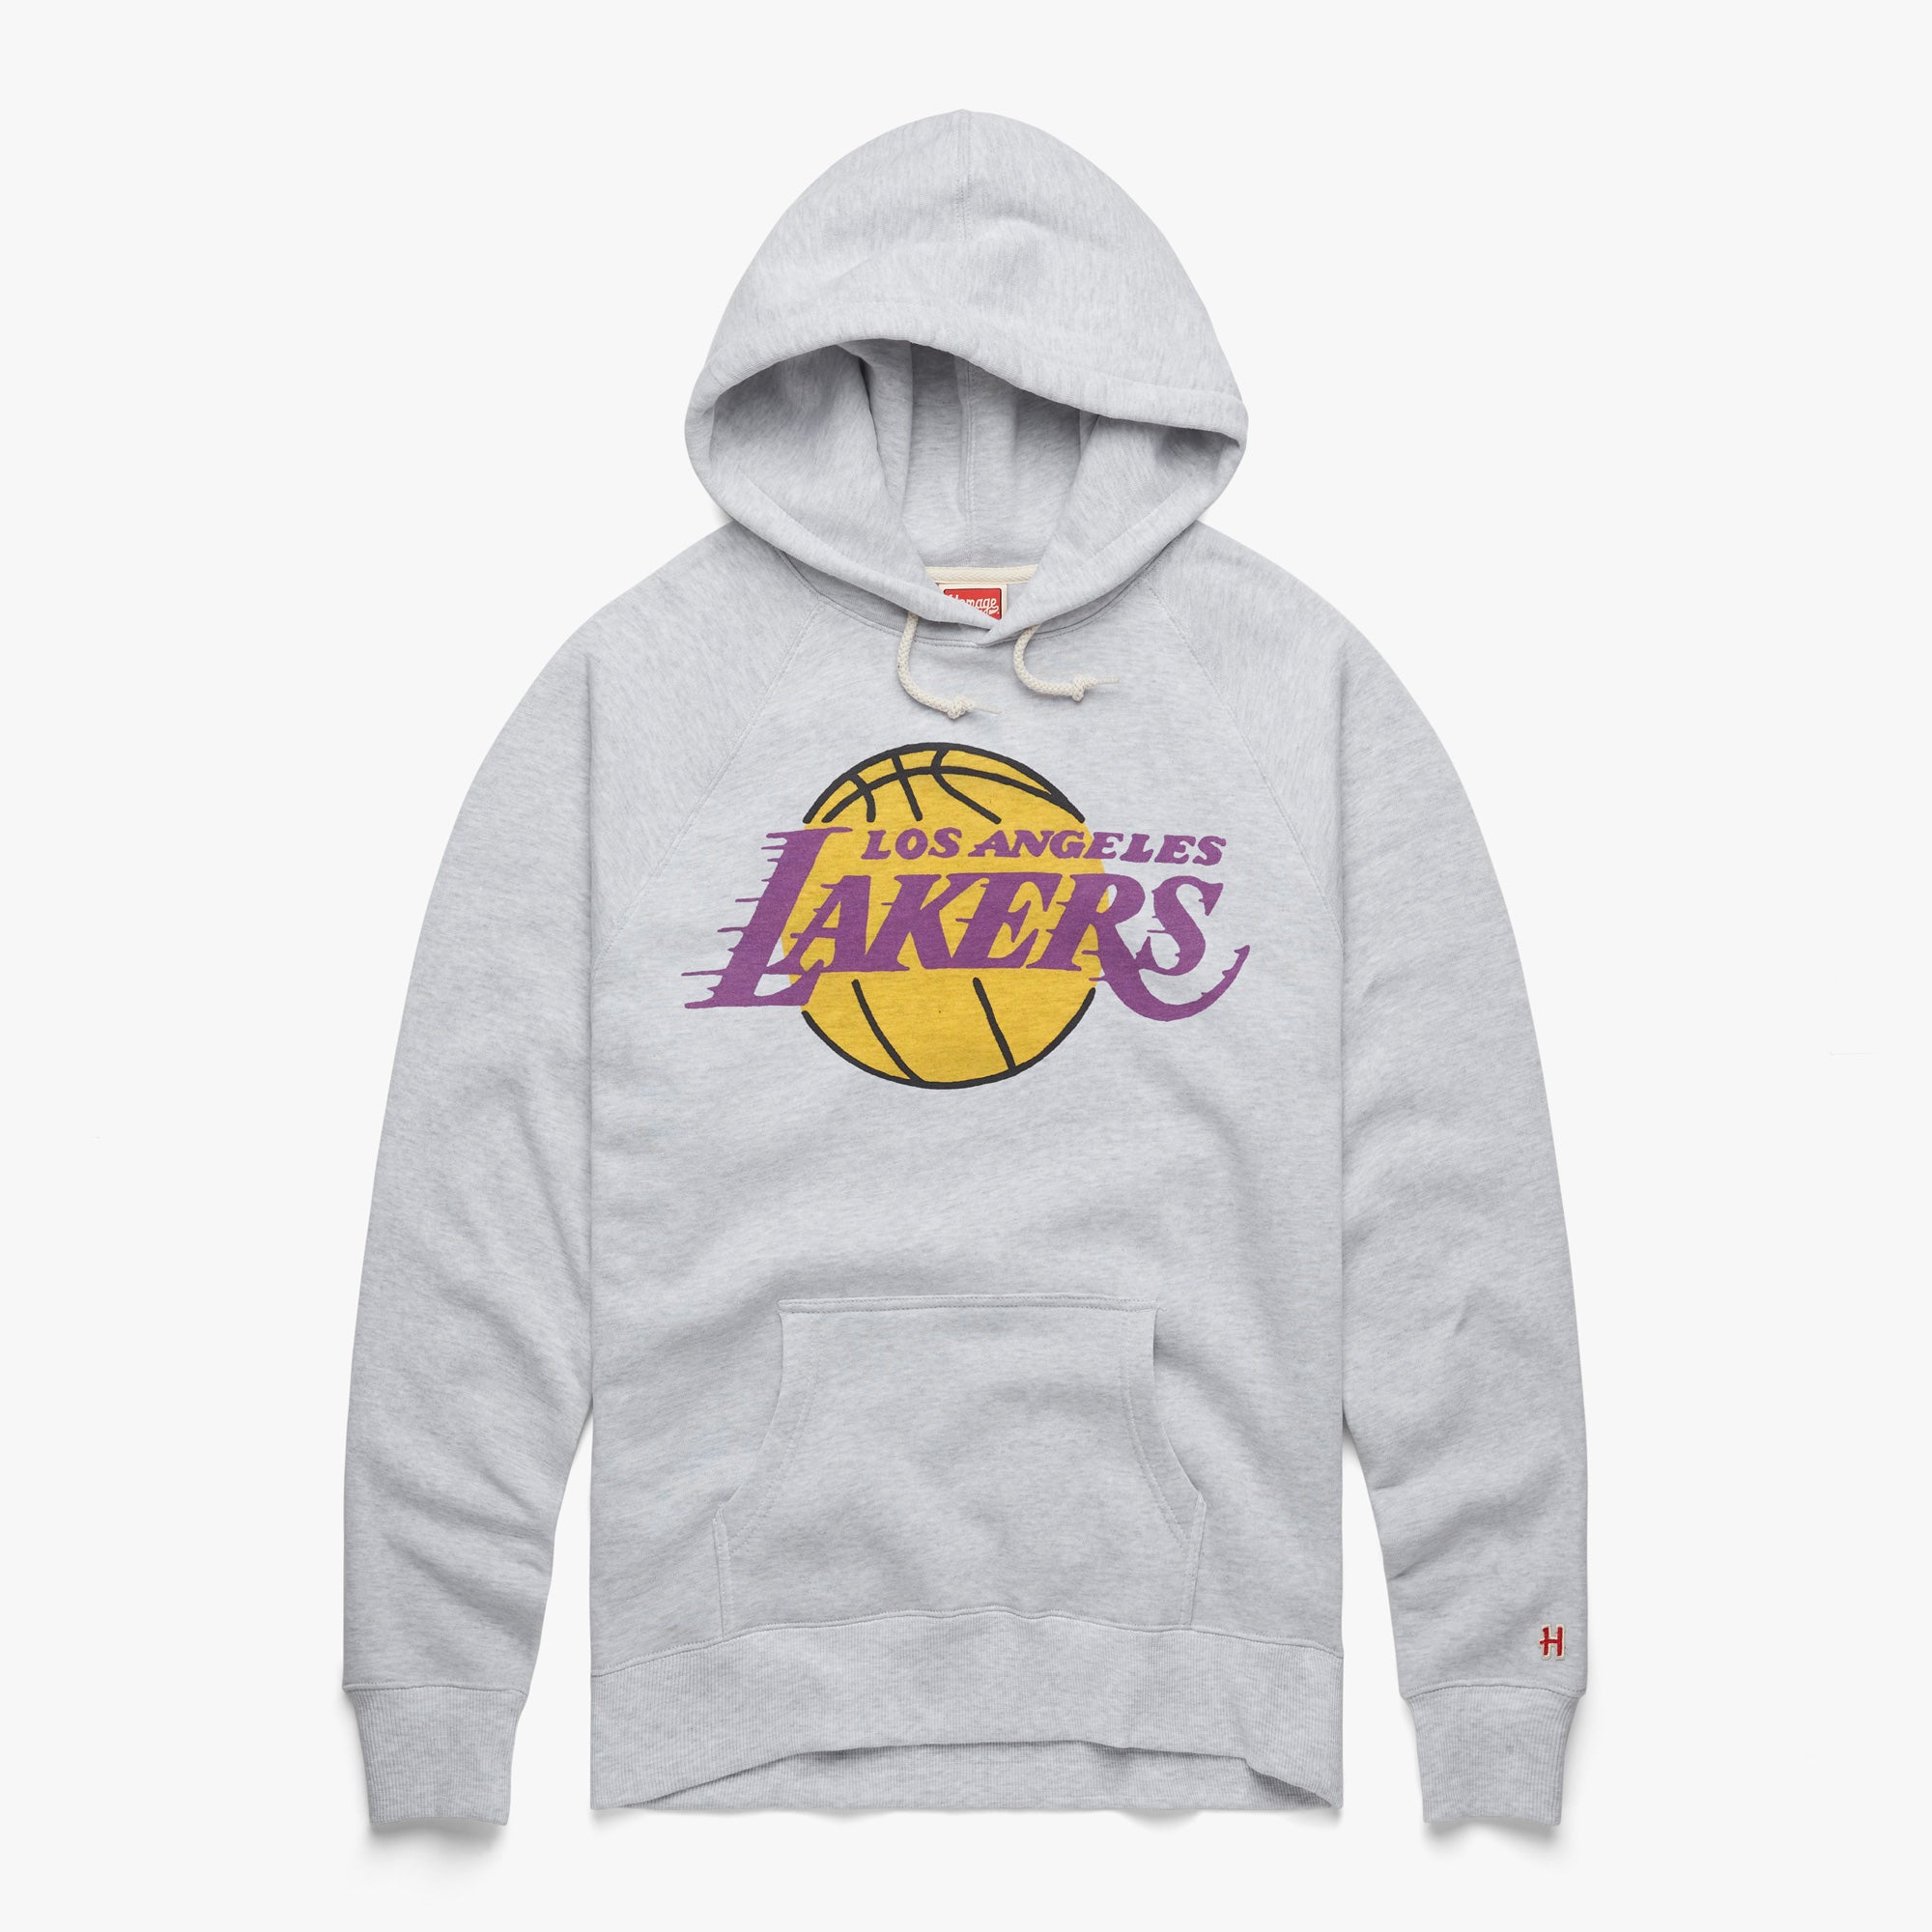 Los Angeles Lakers, Shirts, Los Angeles Lakers Hoodie